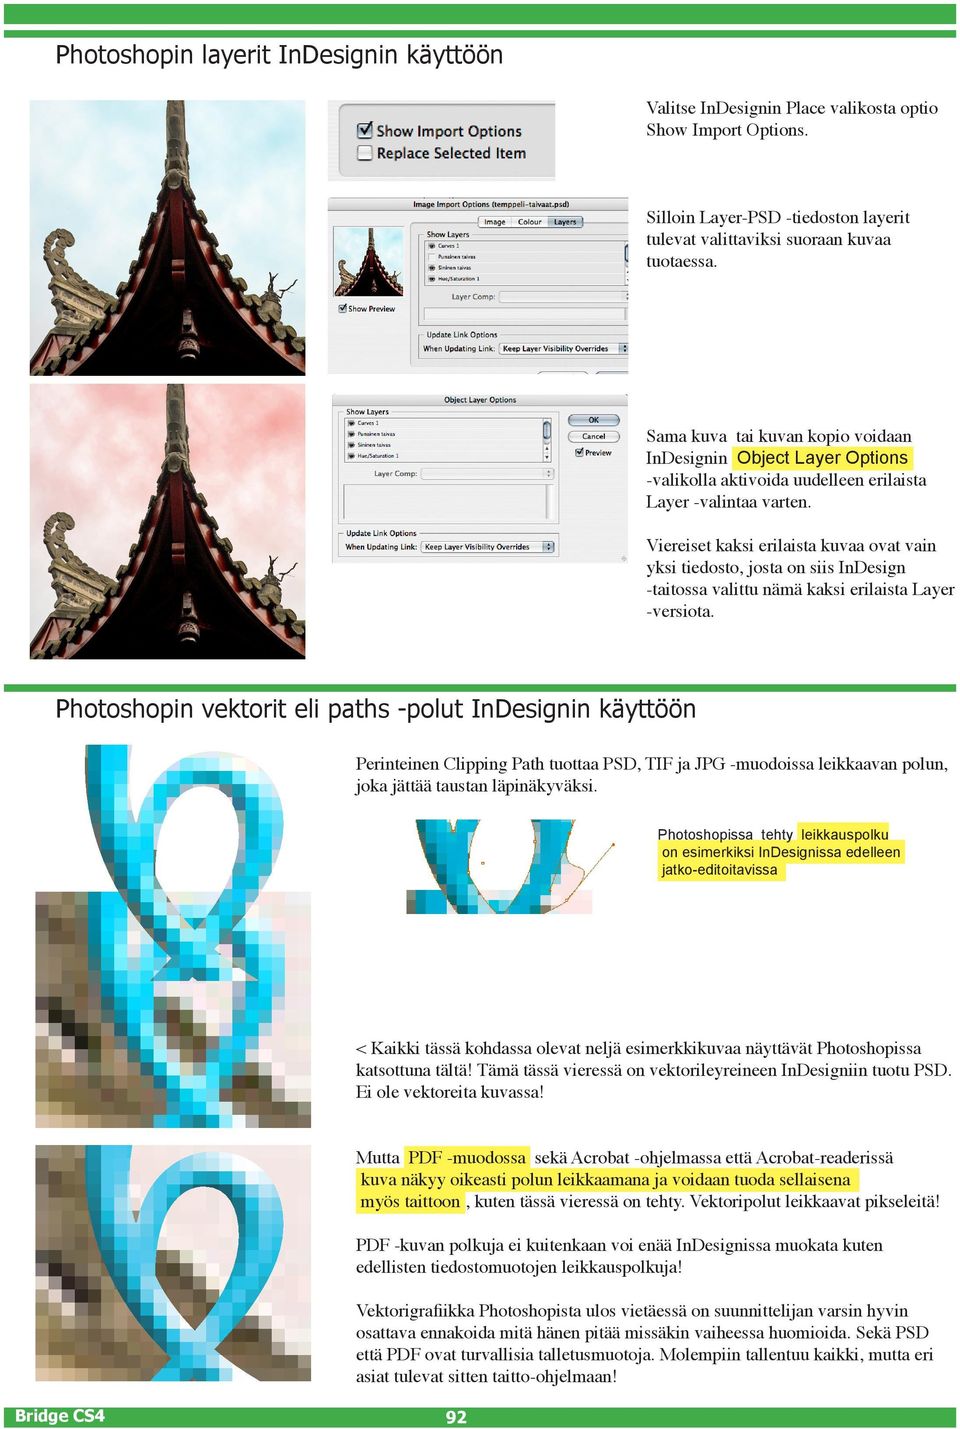 Viereiset kaksi erilaista kuvaa ovat vain yksi tiedosto, josta on siis InDesign -taitossa valittu nämä kaksi erilaista Layer -versiota.